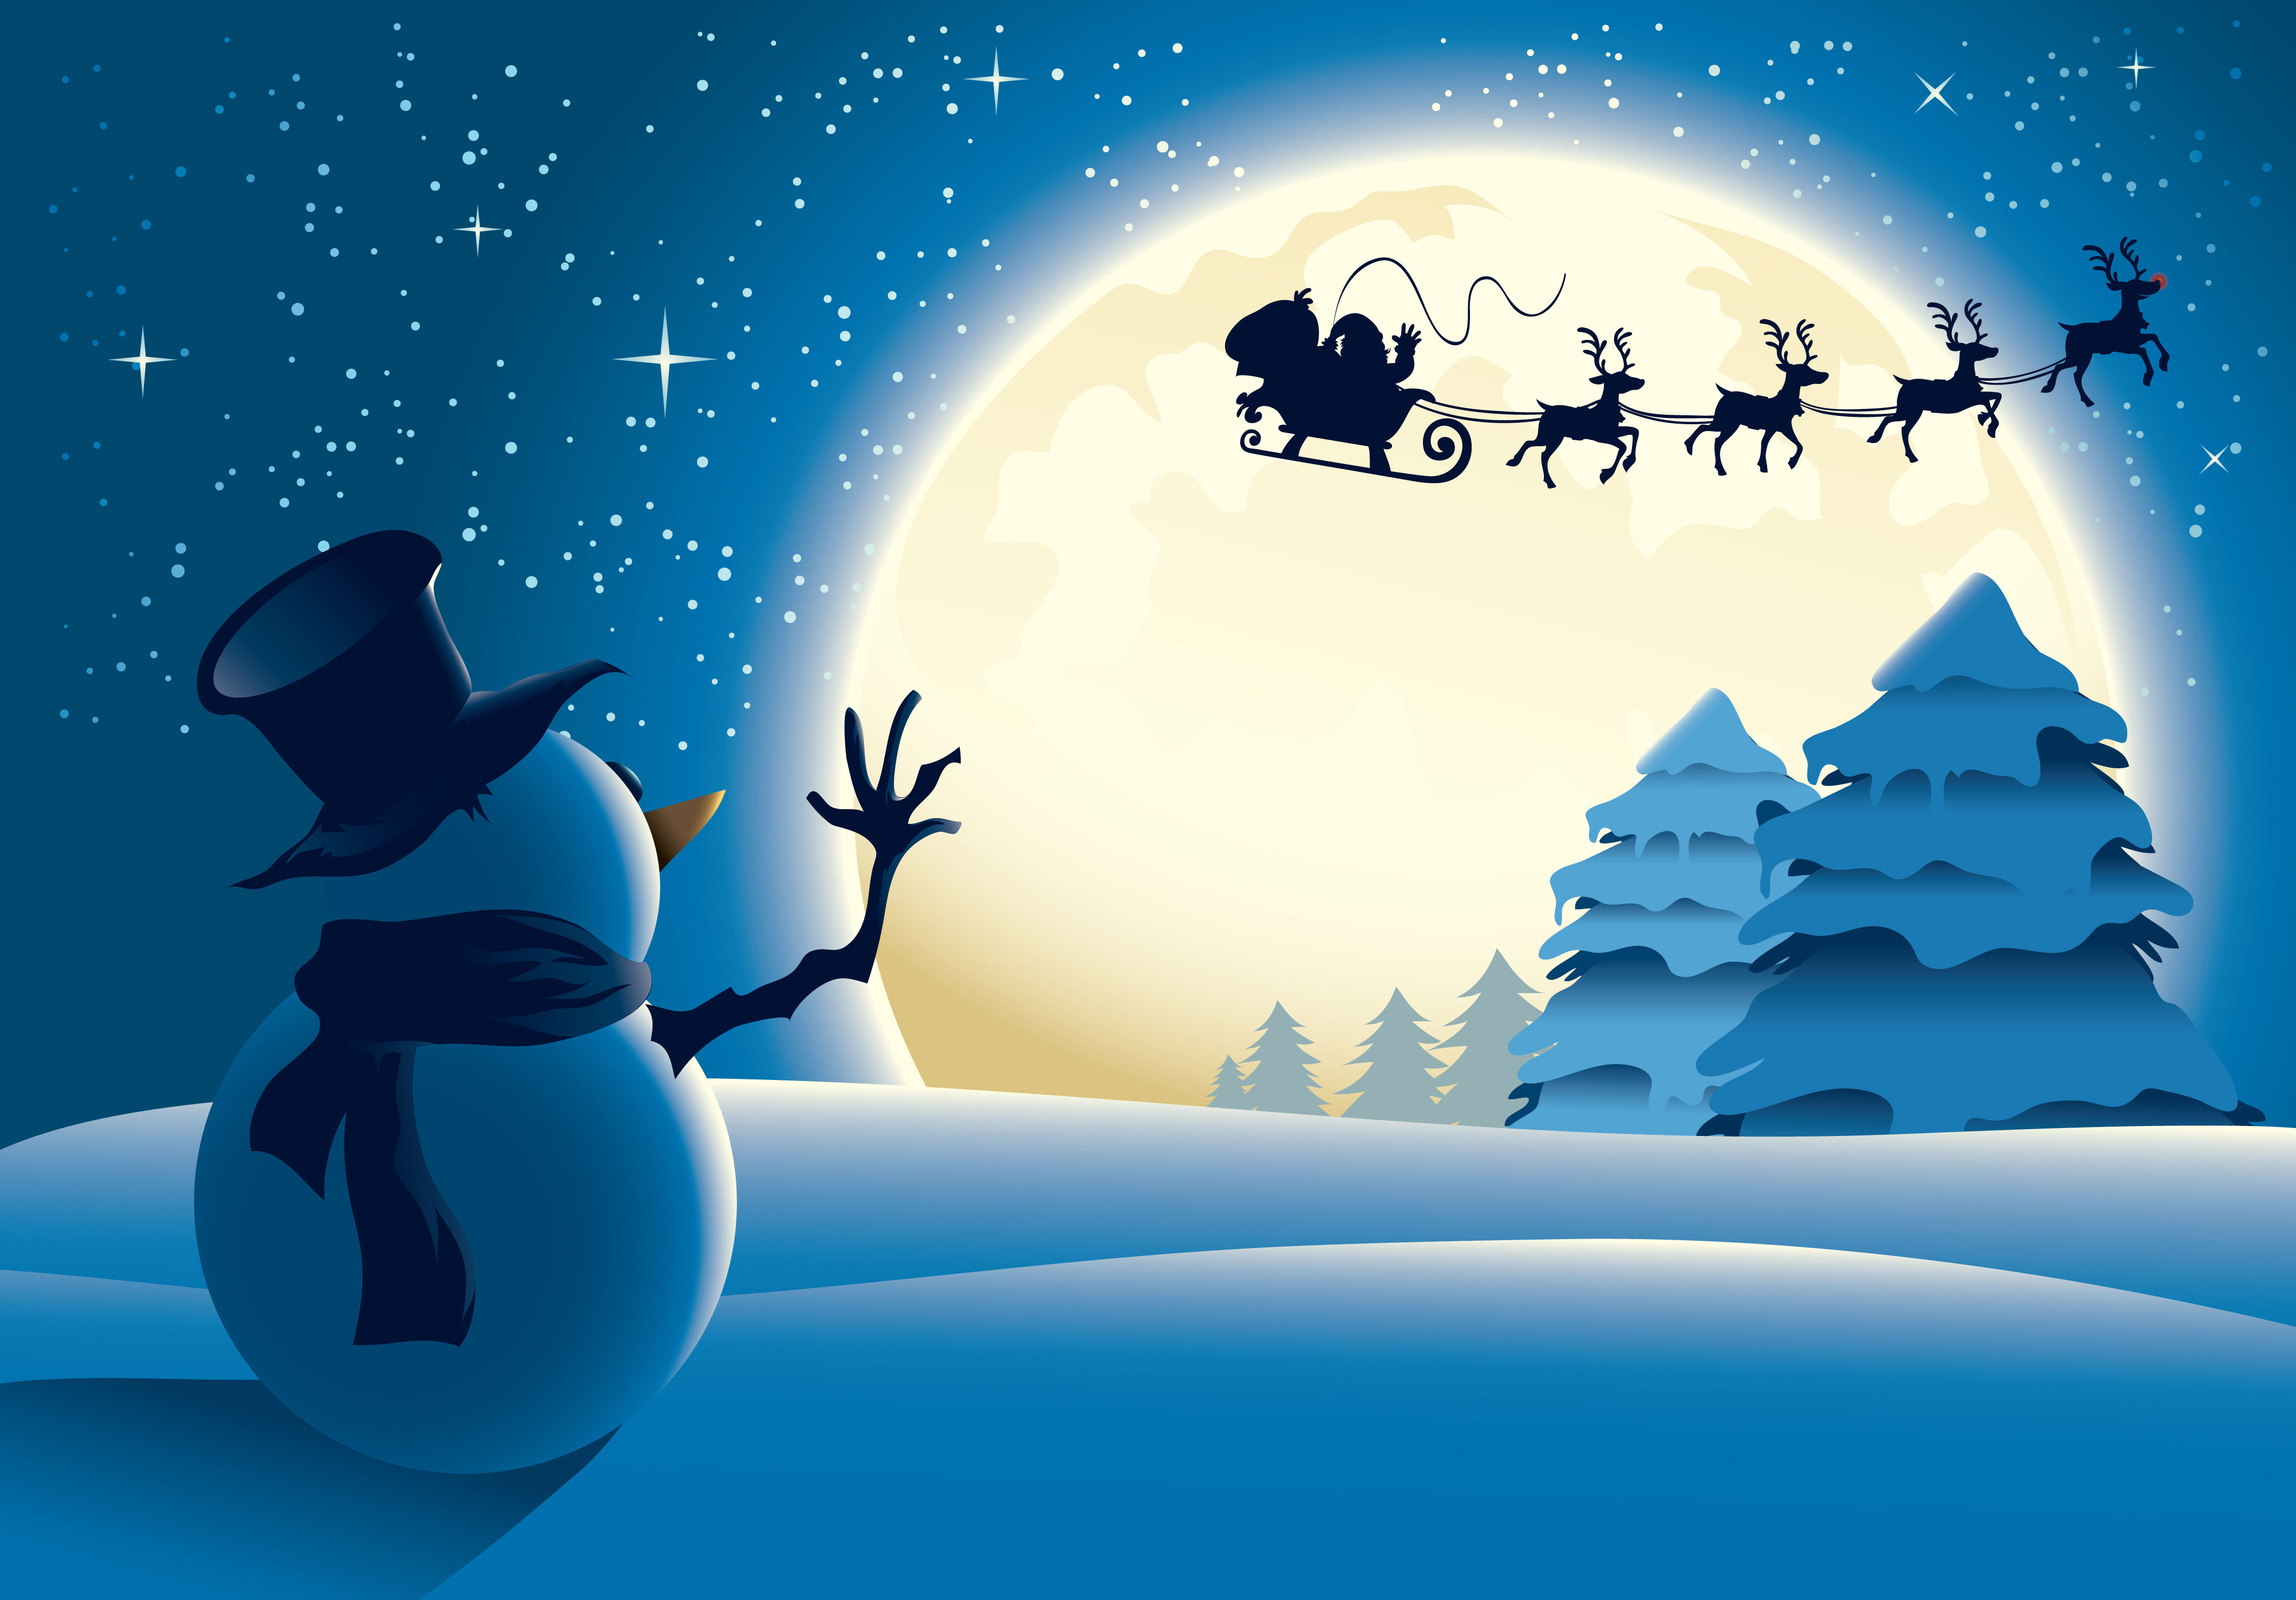 Santa Claus Is Ing Snow Sleigh Snowman Stars Full Moon